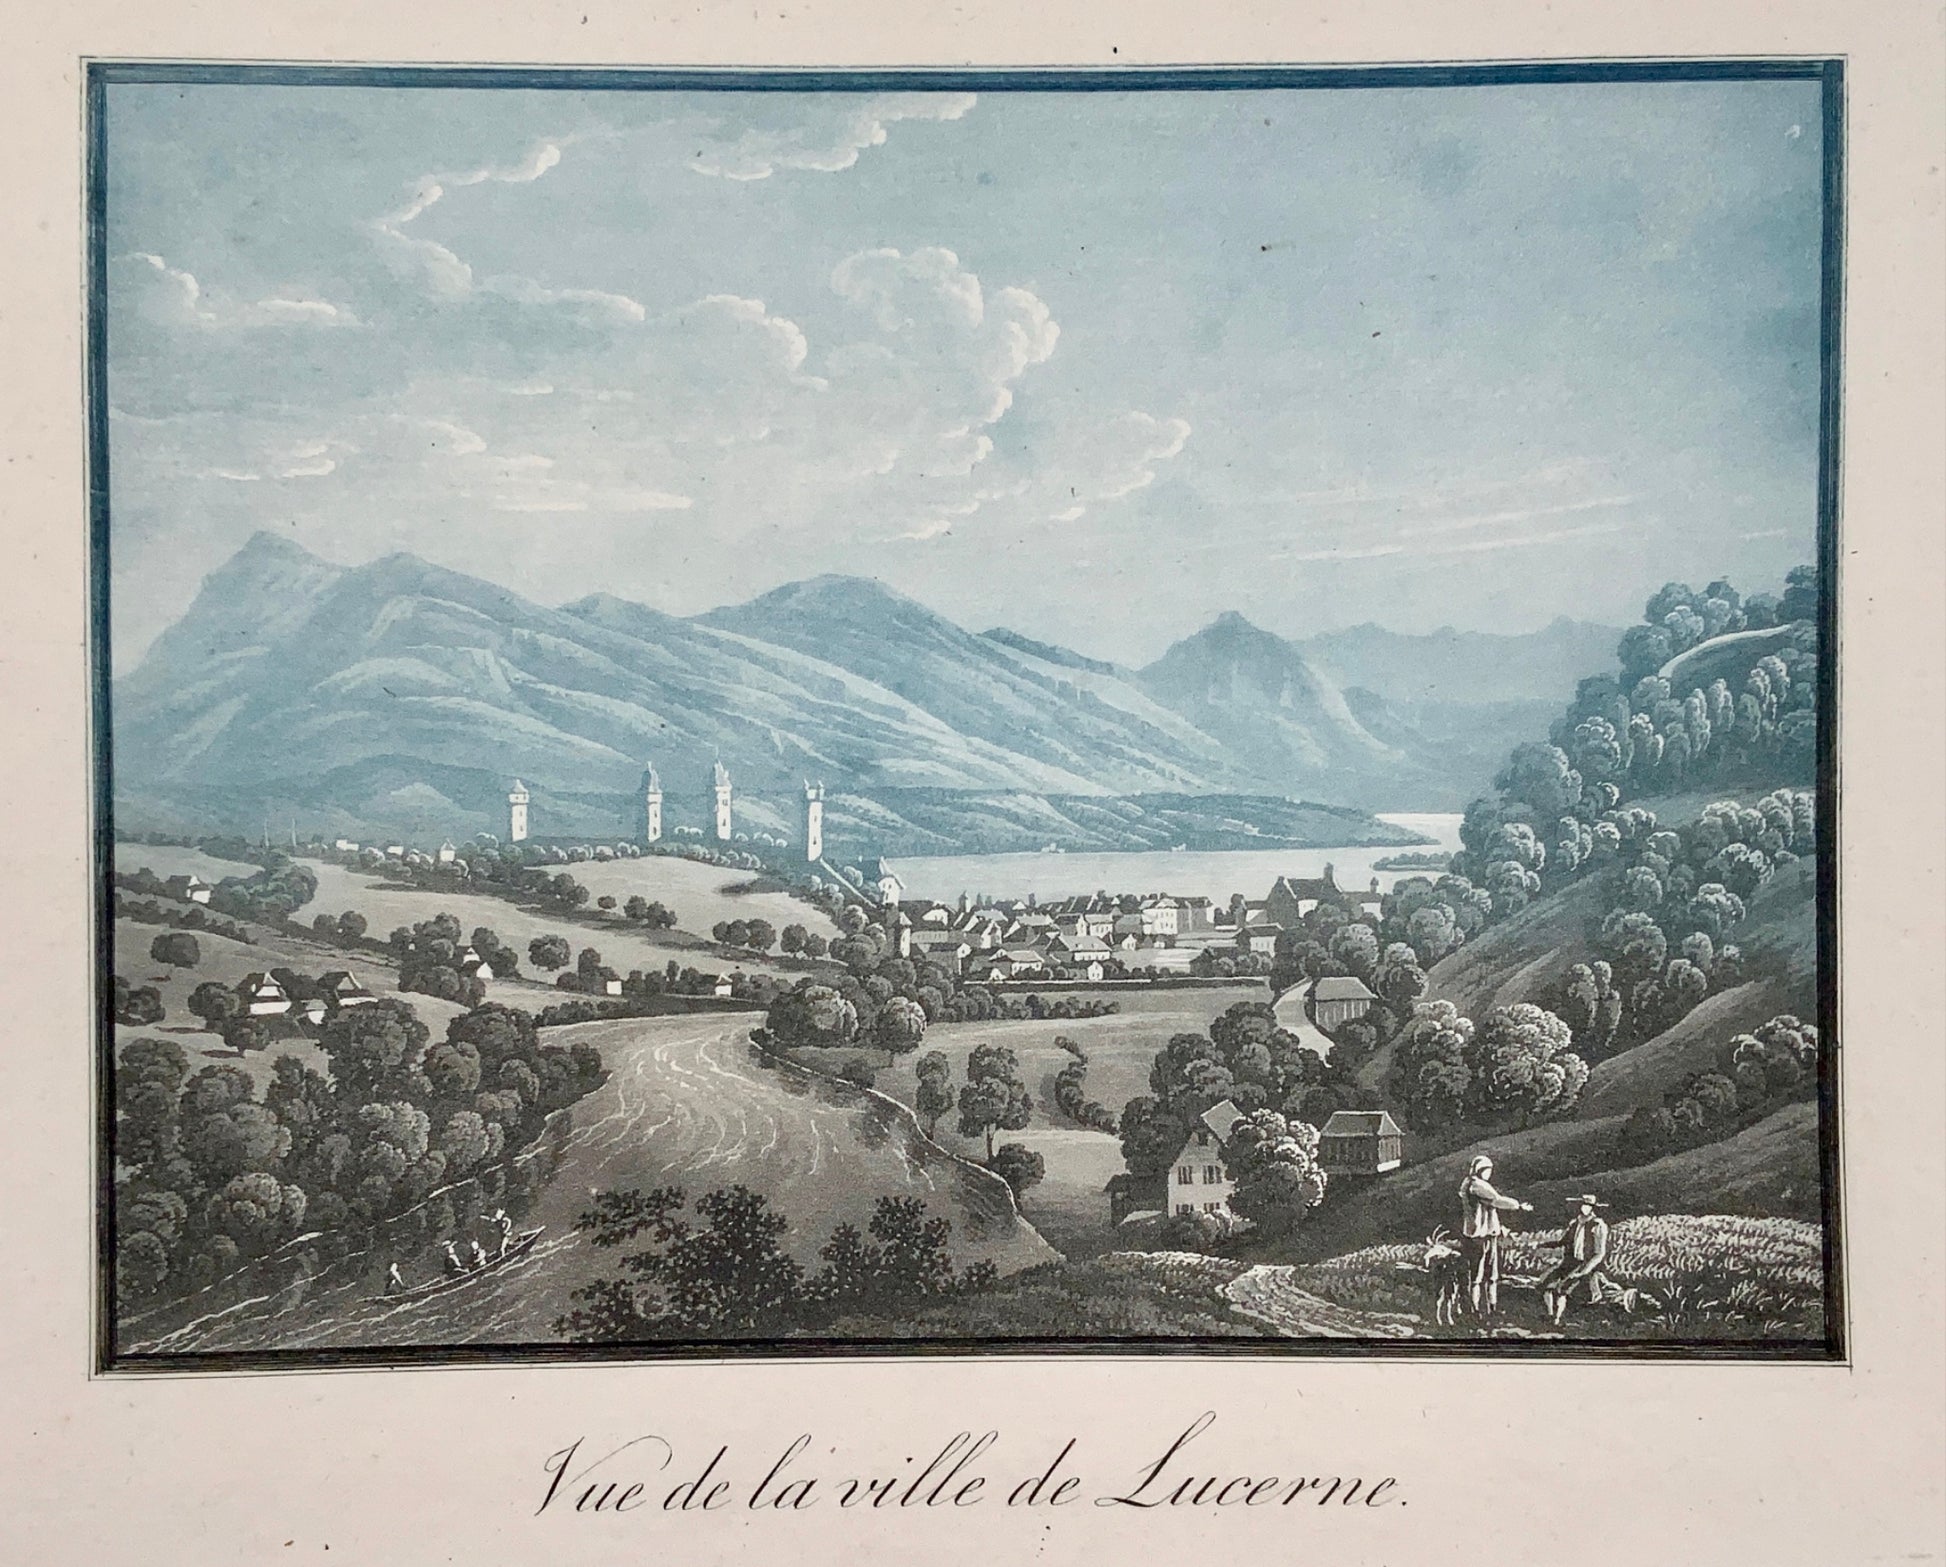 1805 c LUCERNE Luzern Switzerland - Blue/grey toned aquatint published by Lamy